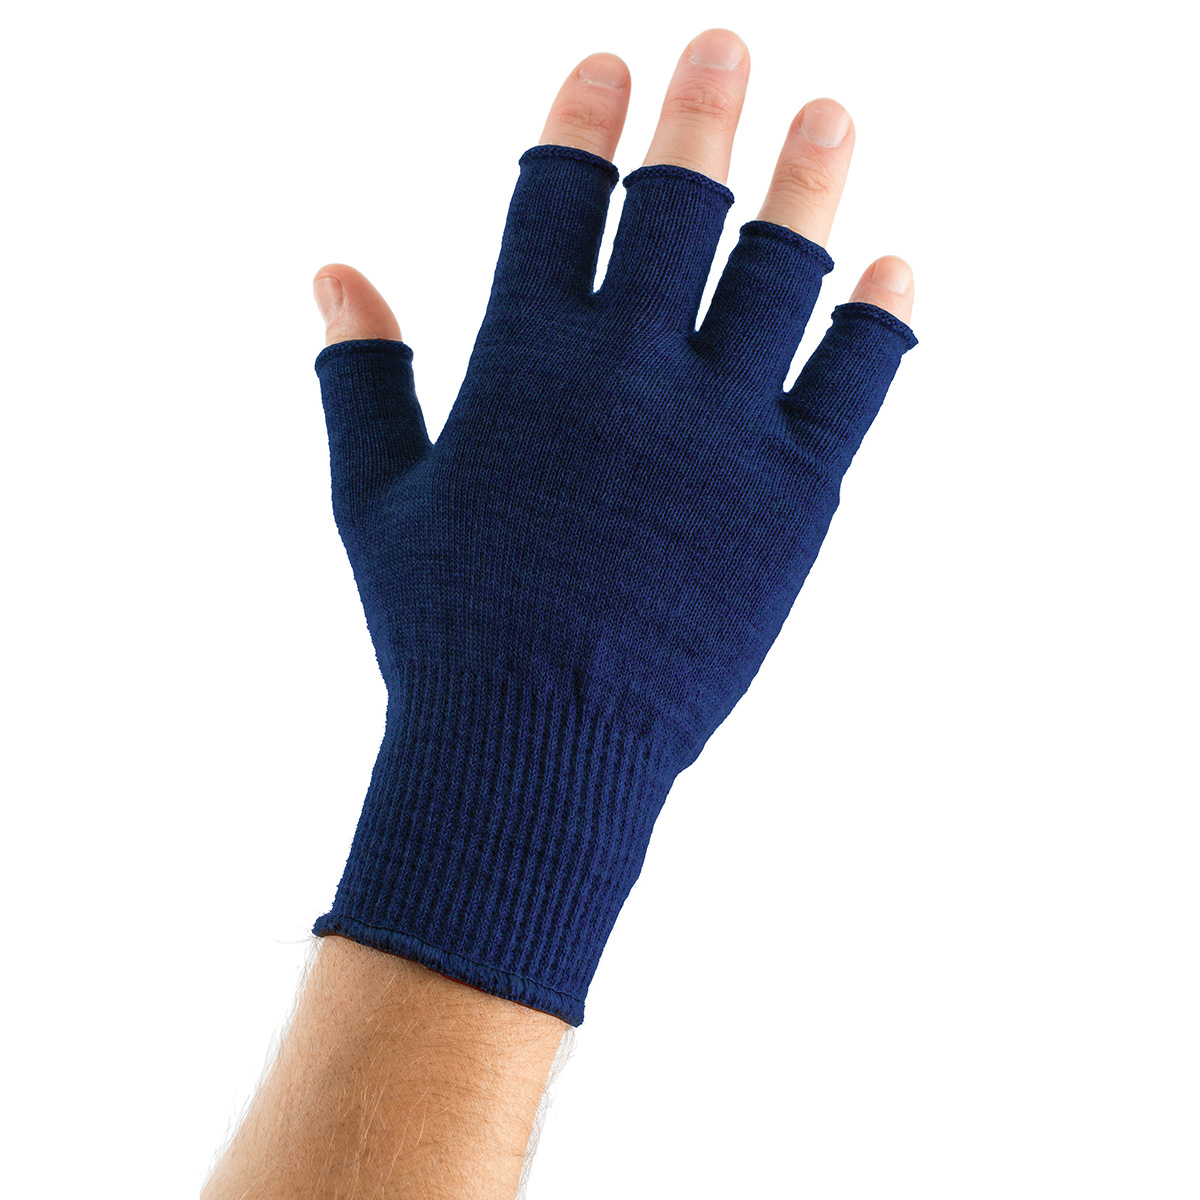 https://edz.co.uk/wp-content/uploads/2014/01/Gloves-Fingerless-Merino-Blue.jpg